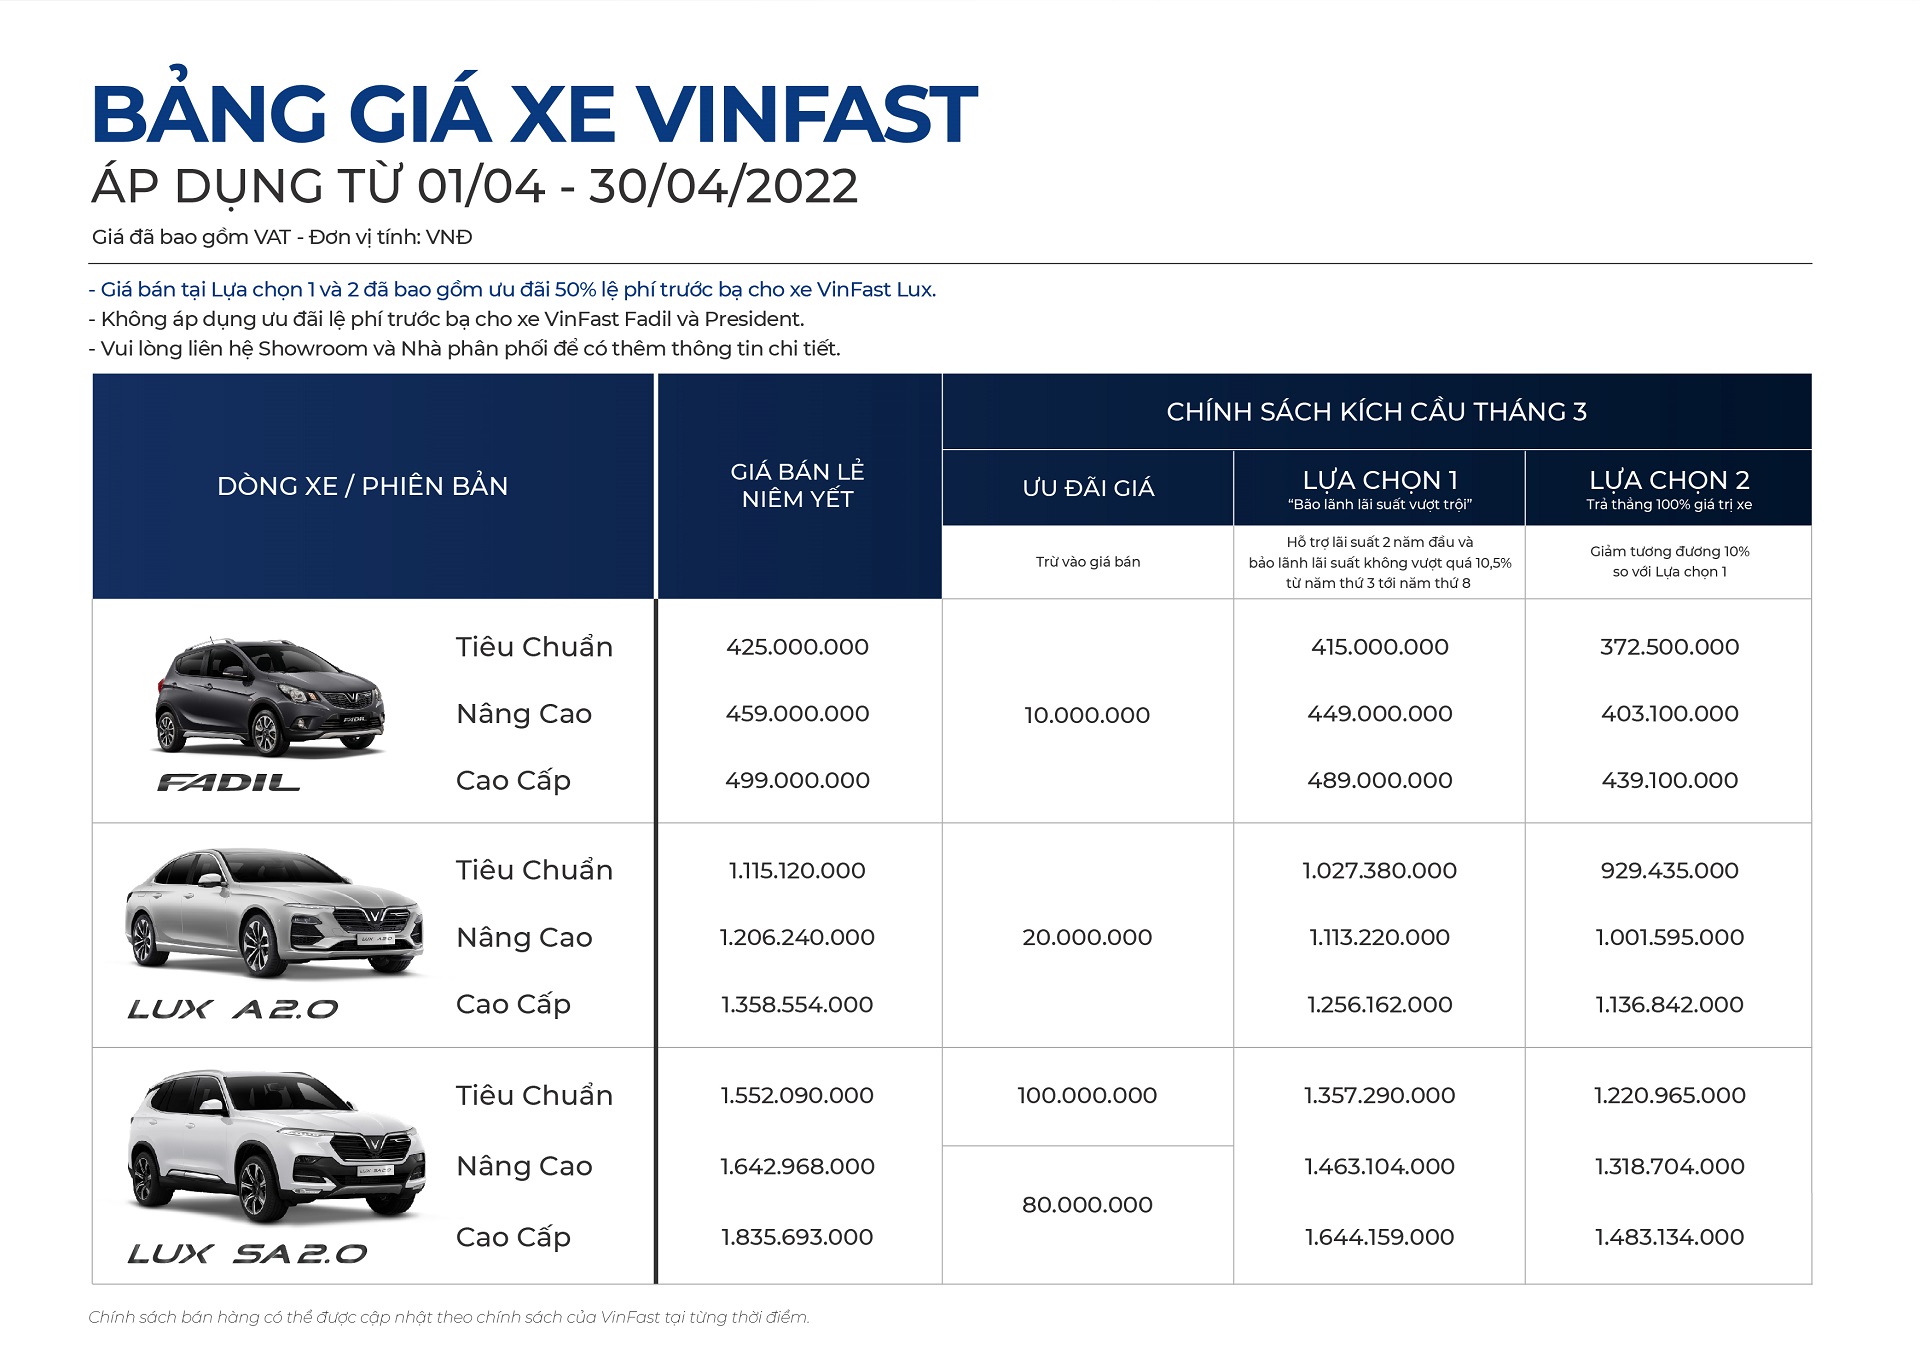 VinFast công bố kết quả kinh doanh ô tô tháng 3/2022